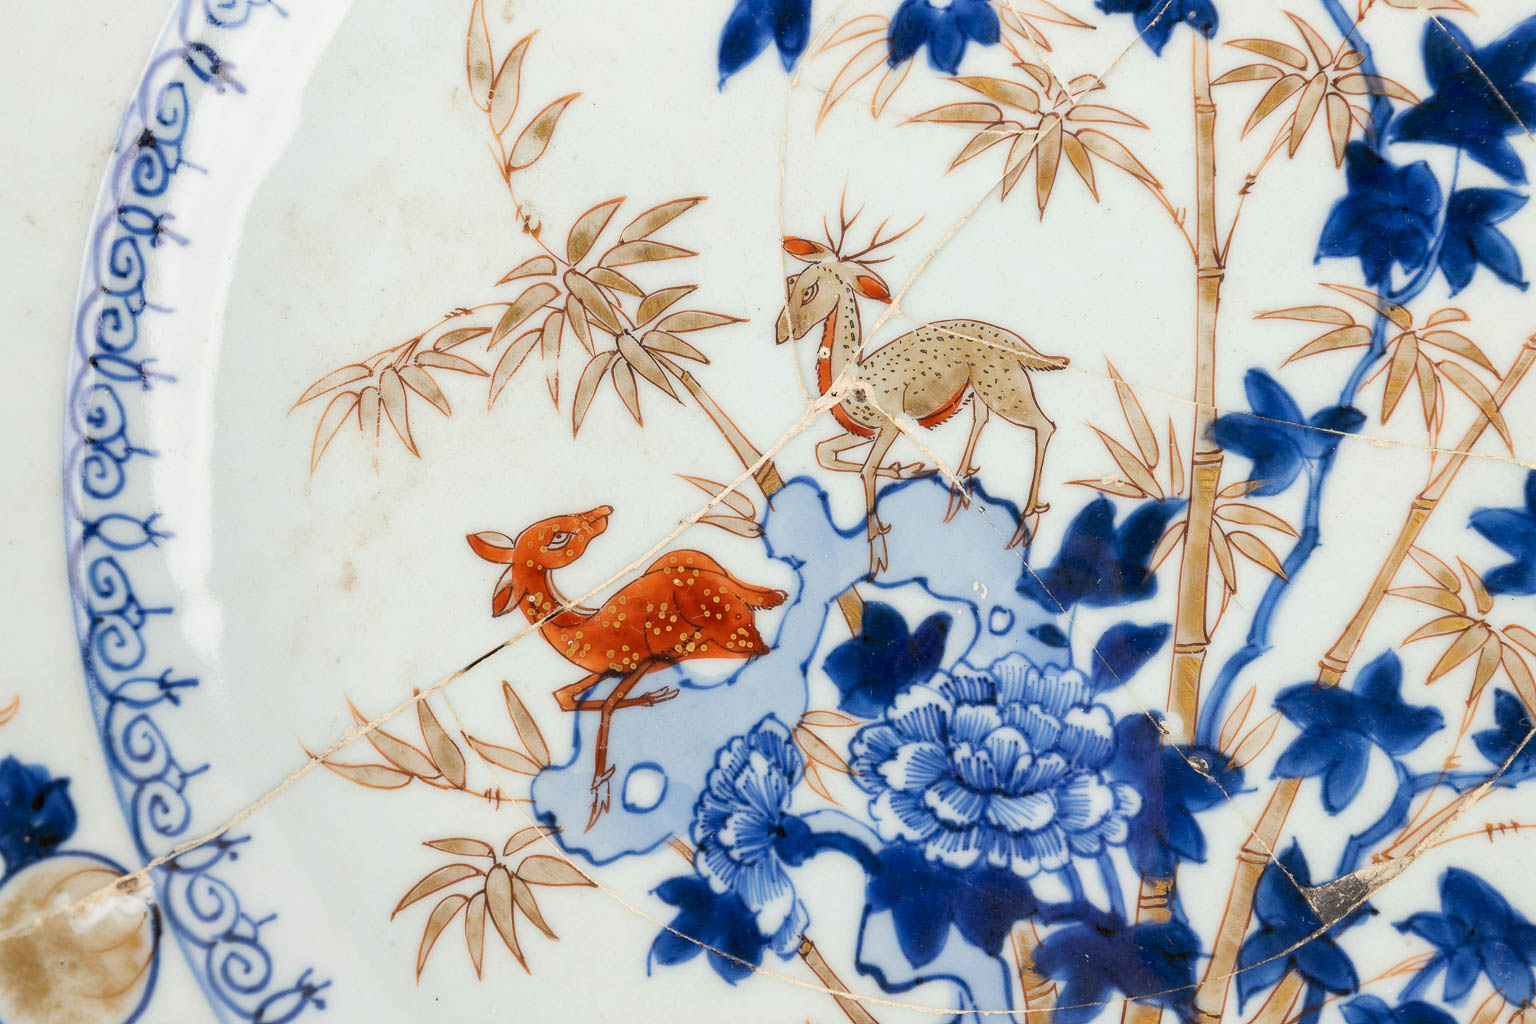 Een collectie van 10 Chinese borden met blauw-wit decor. 19de/20ste eeuw. (D: 35 cm)